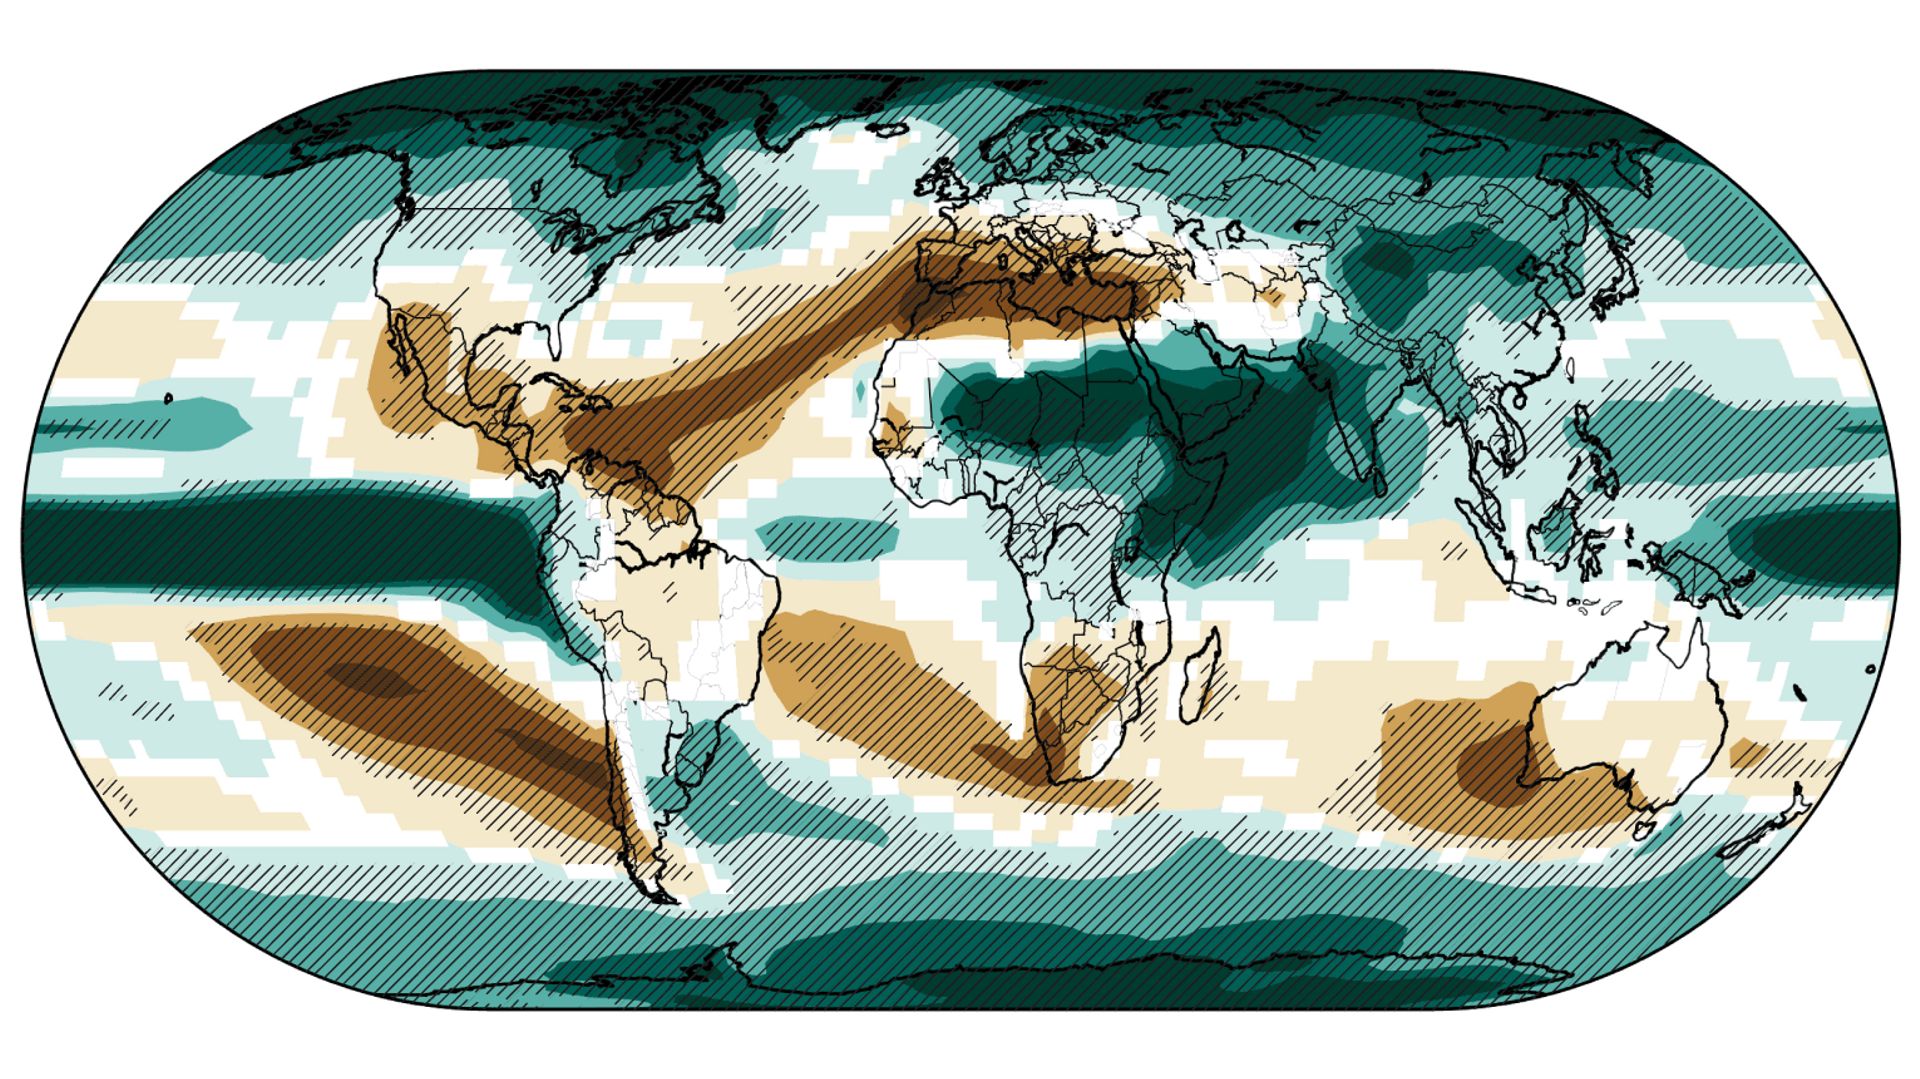 Un monde à +4°C : le pourtour méditerranéen, la Californie, l’Afrique du Sud ou encore l’Australie deviendront complètement arides, alors que d’autres zones comme l’Asie du Sud-Est ou l’Inde auront encore plus de pluie.